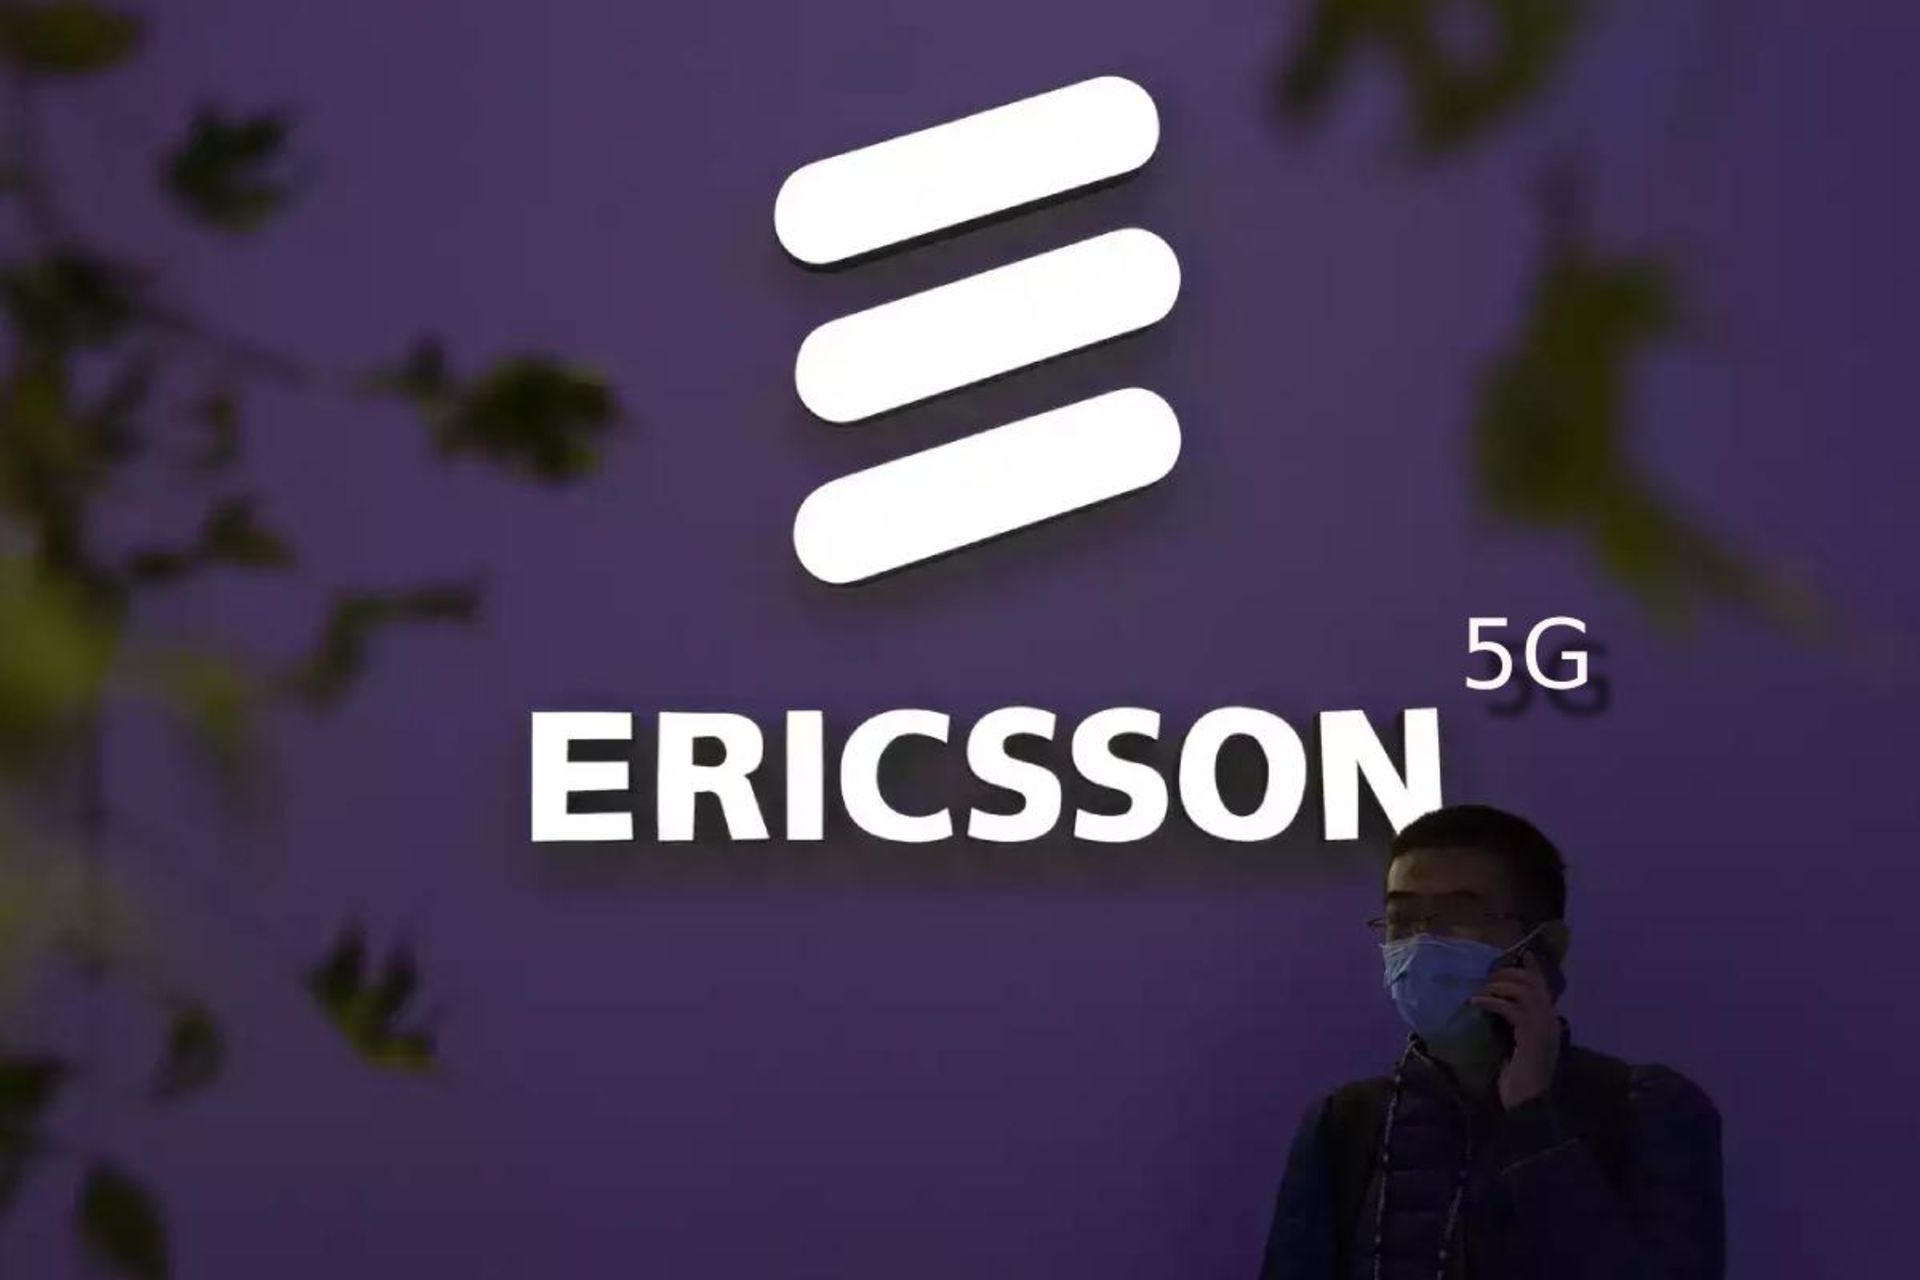 اریکسون | Ericsson